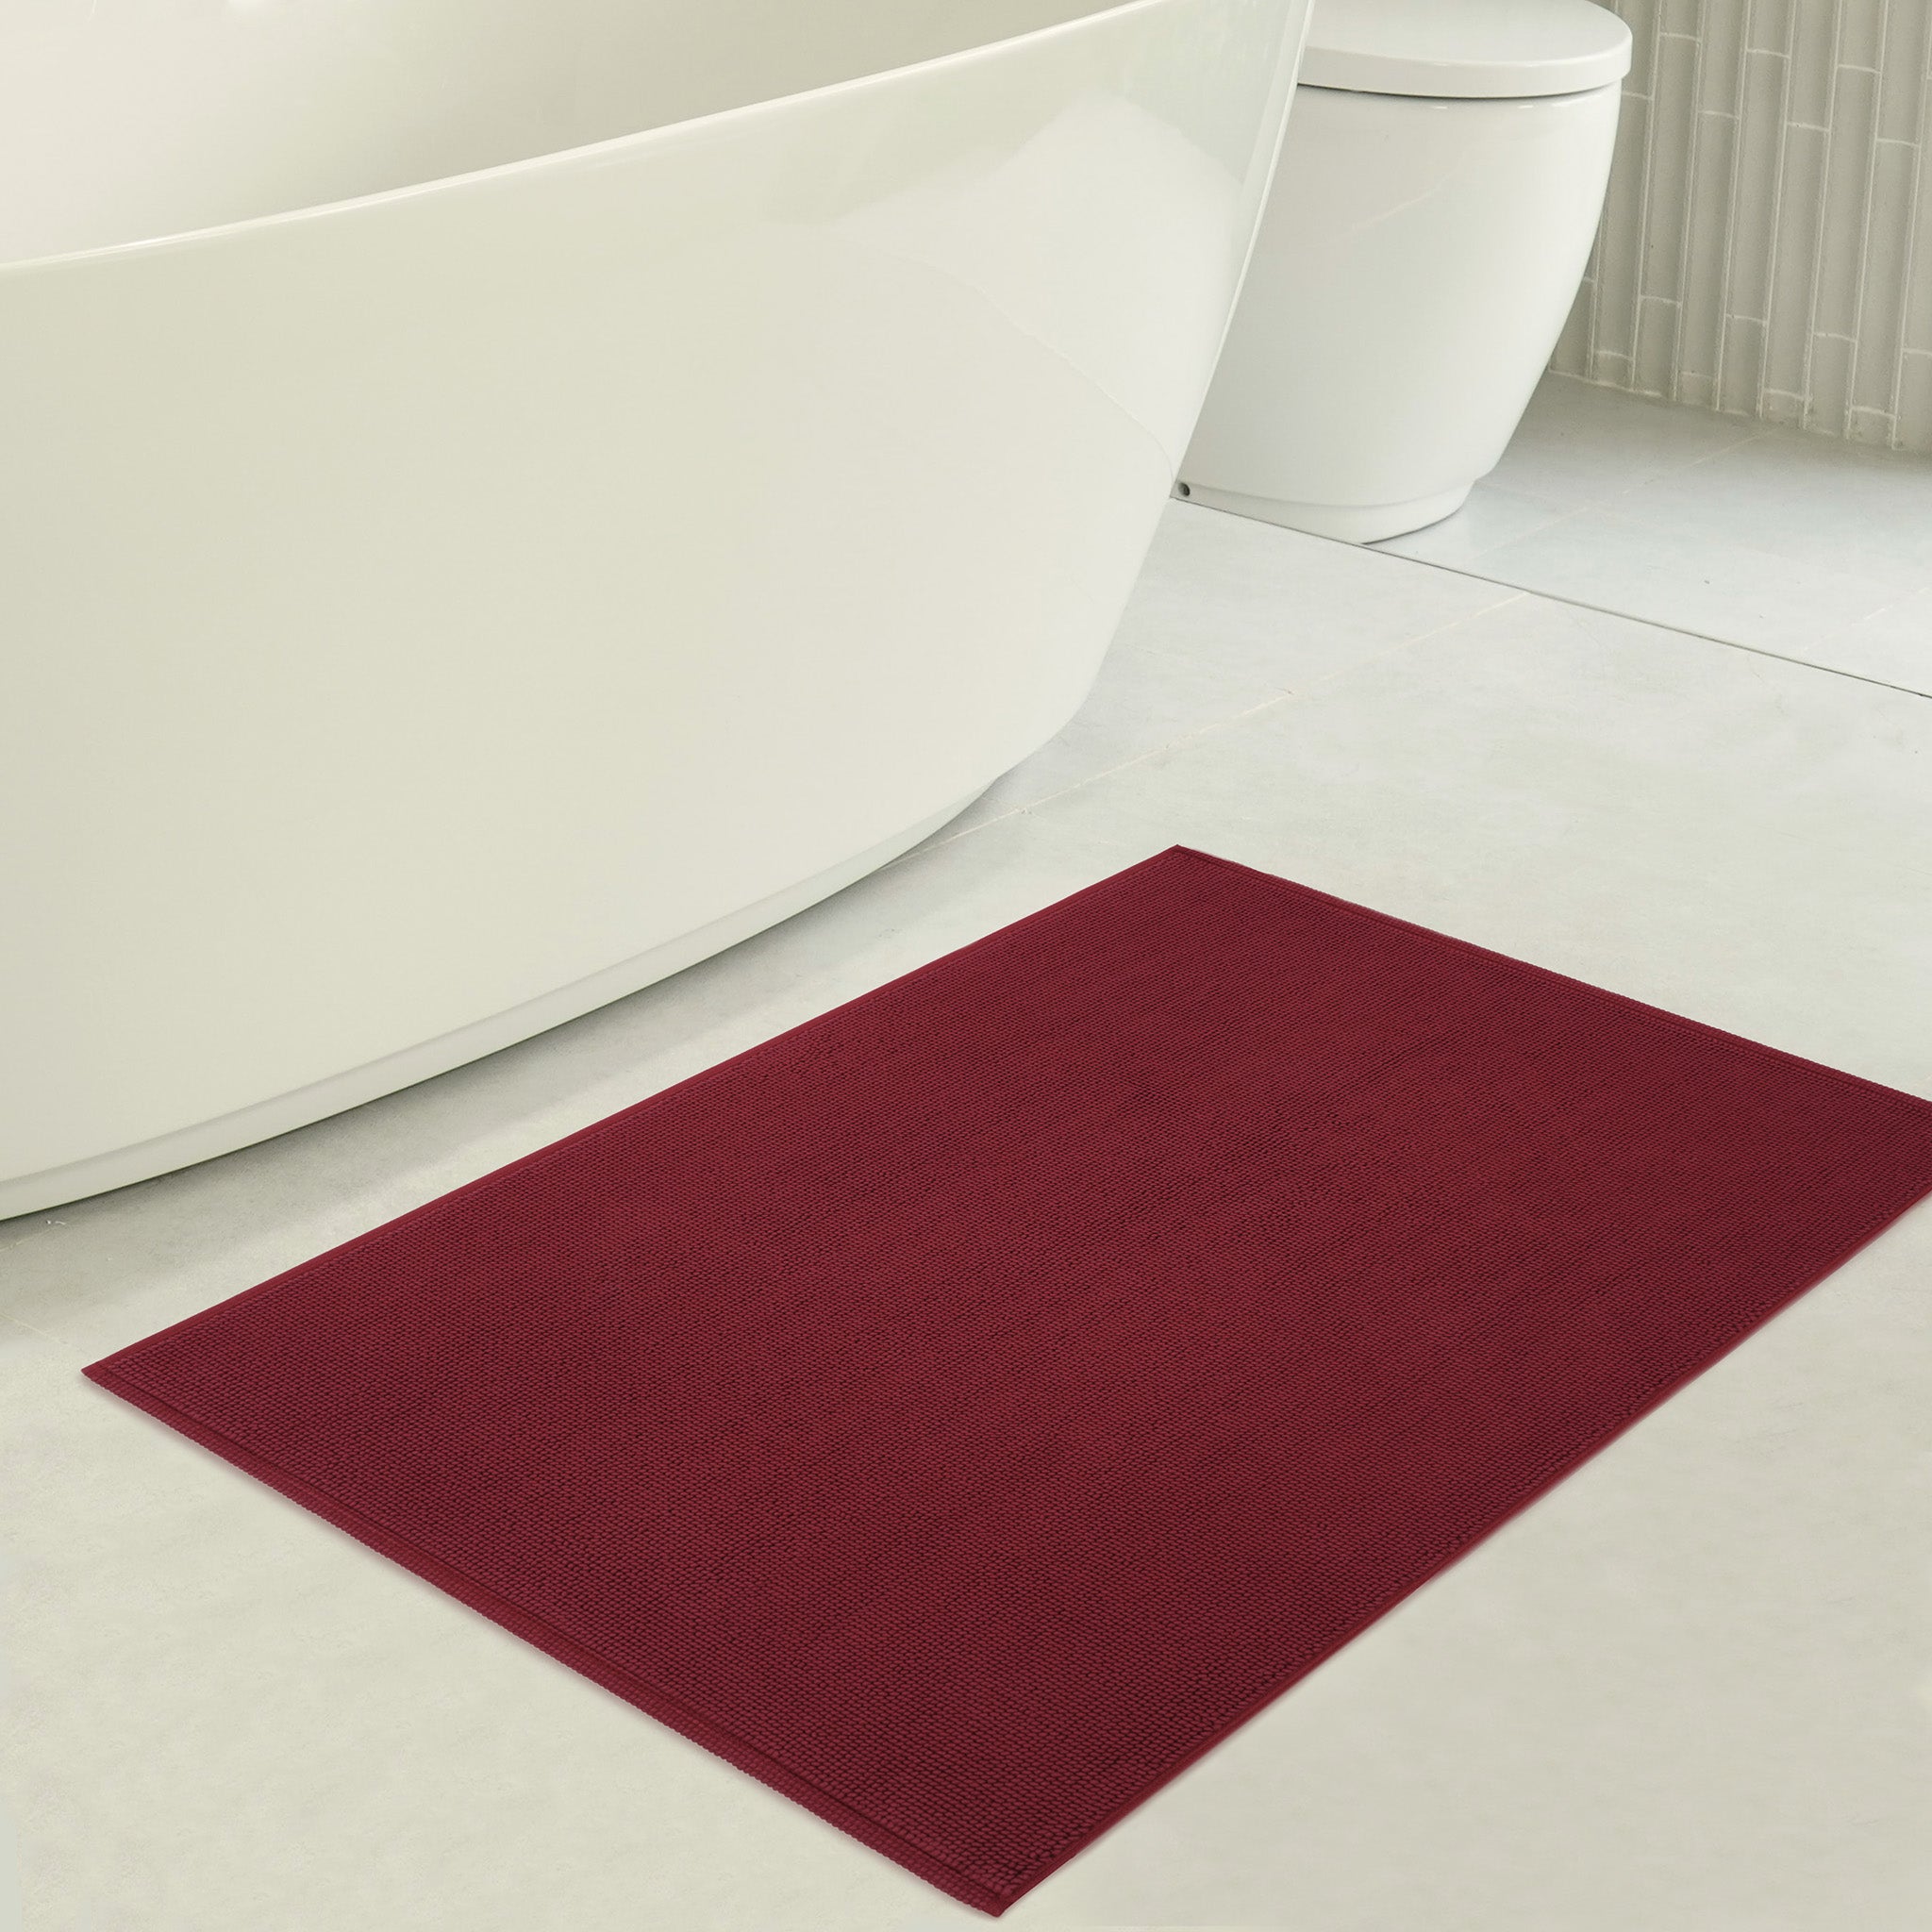 American Soft Linen 100% Cotton Non-Slip 17x24 Inch Bath Rug Wholesale bordeaux-red-3